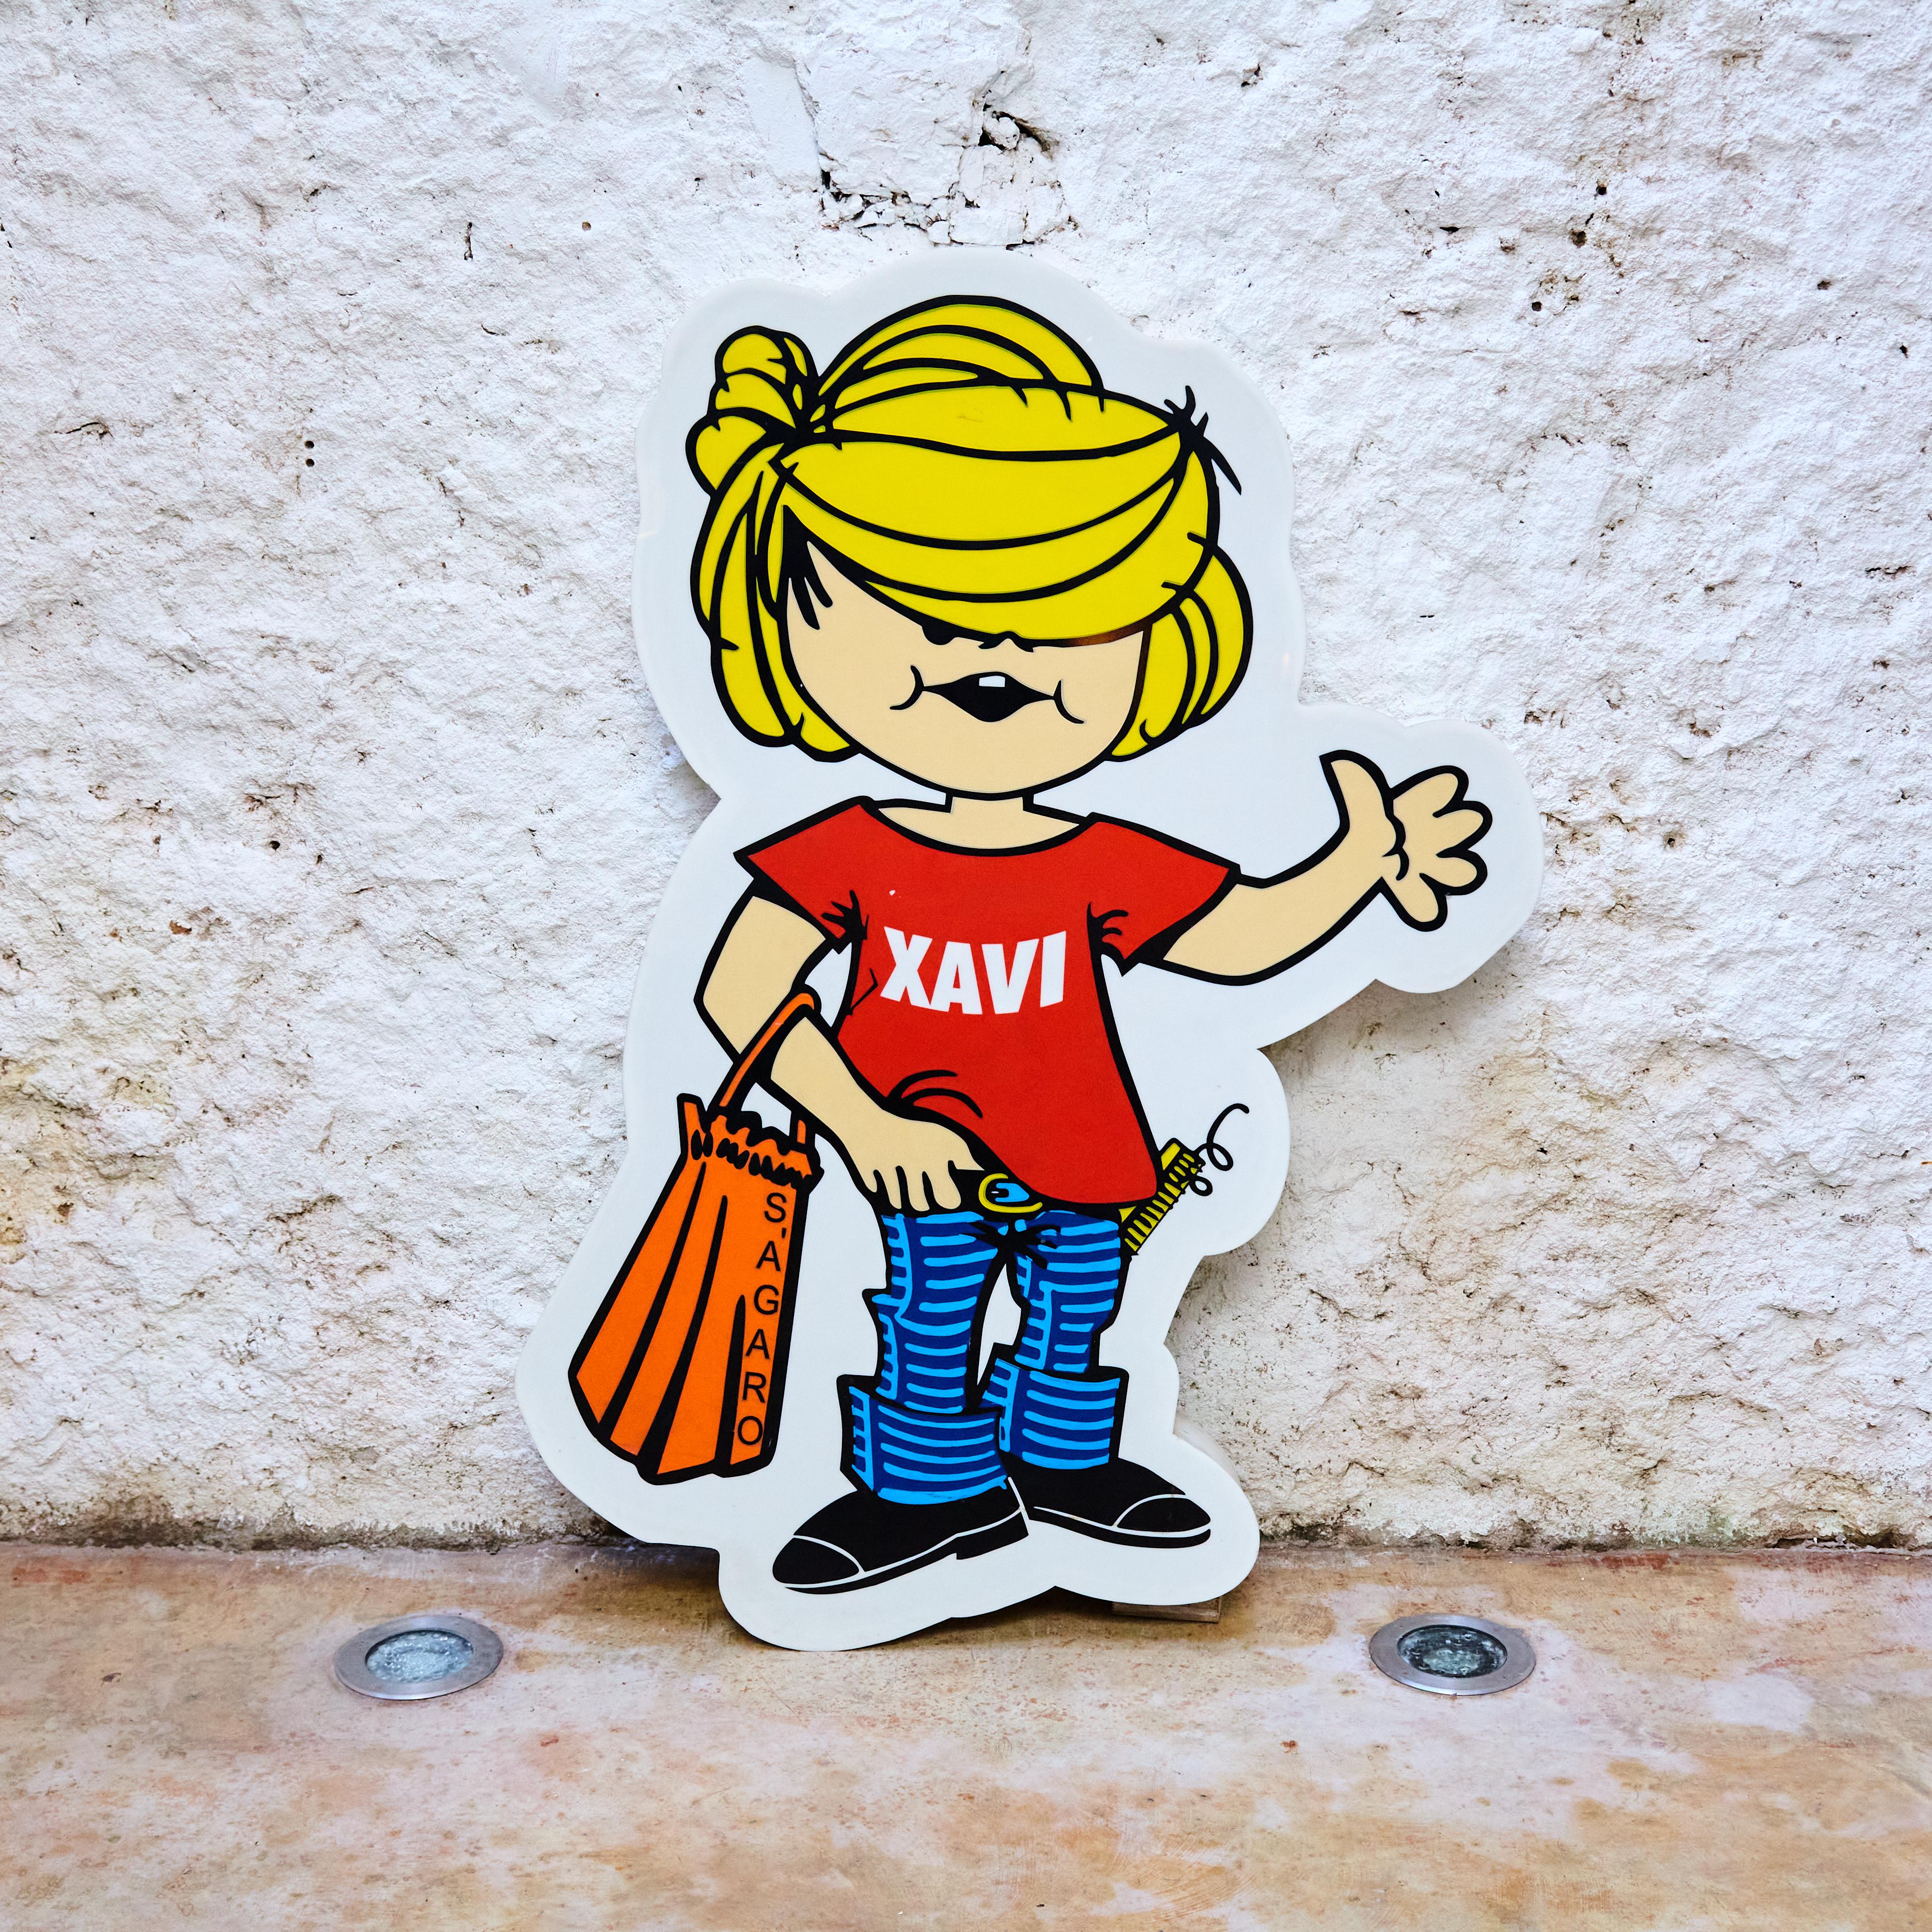 Supermarket Light Sign 'Xavi S'agaro', circa 1970 5